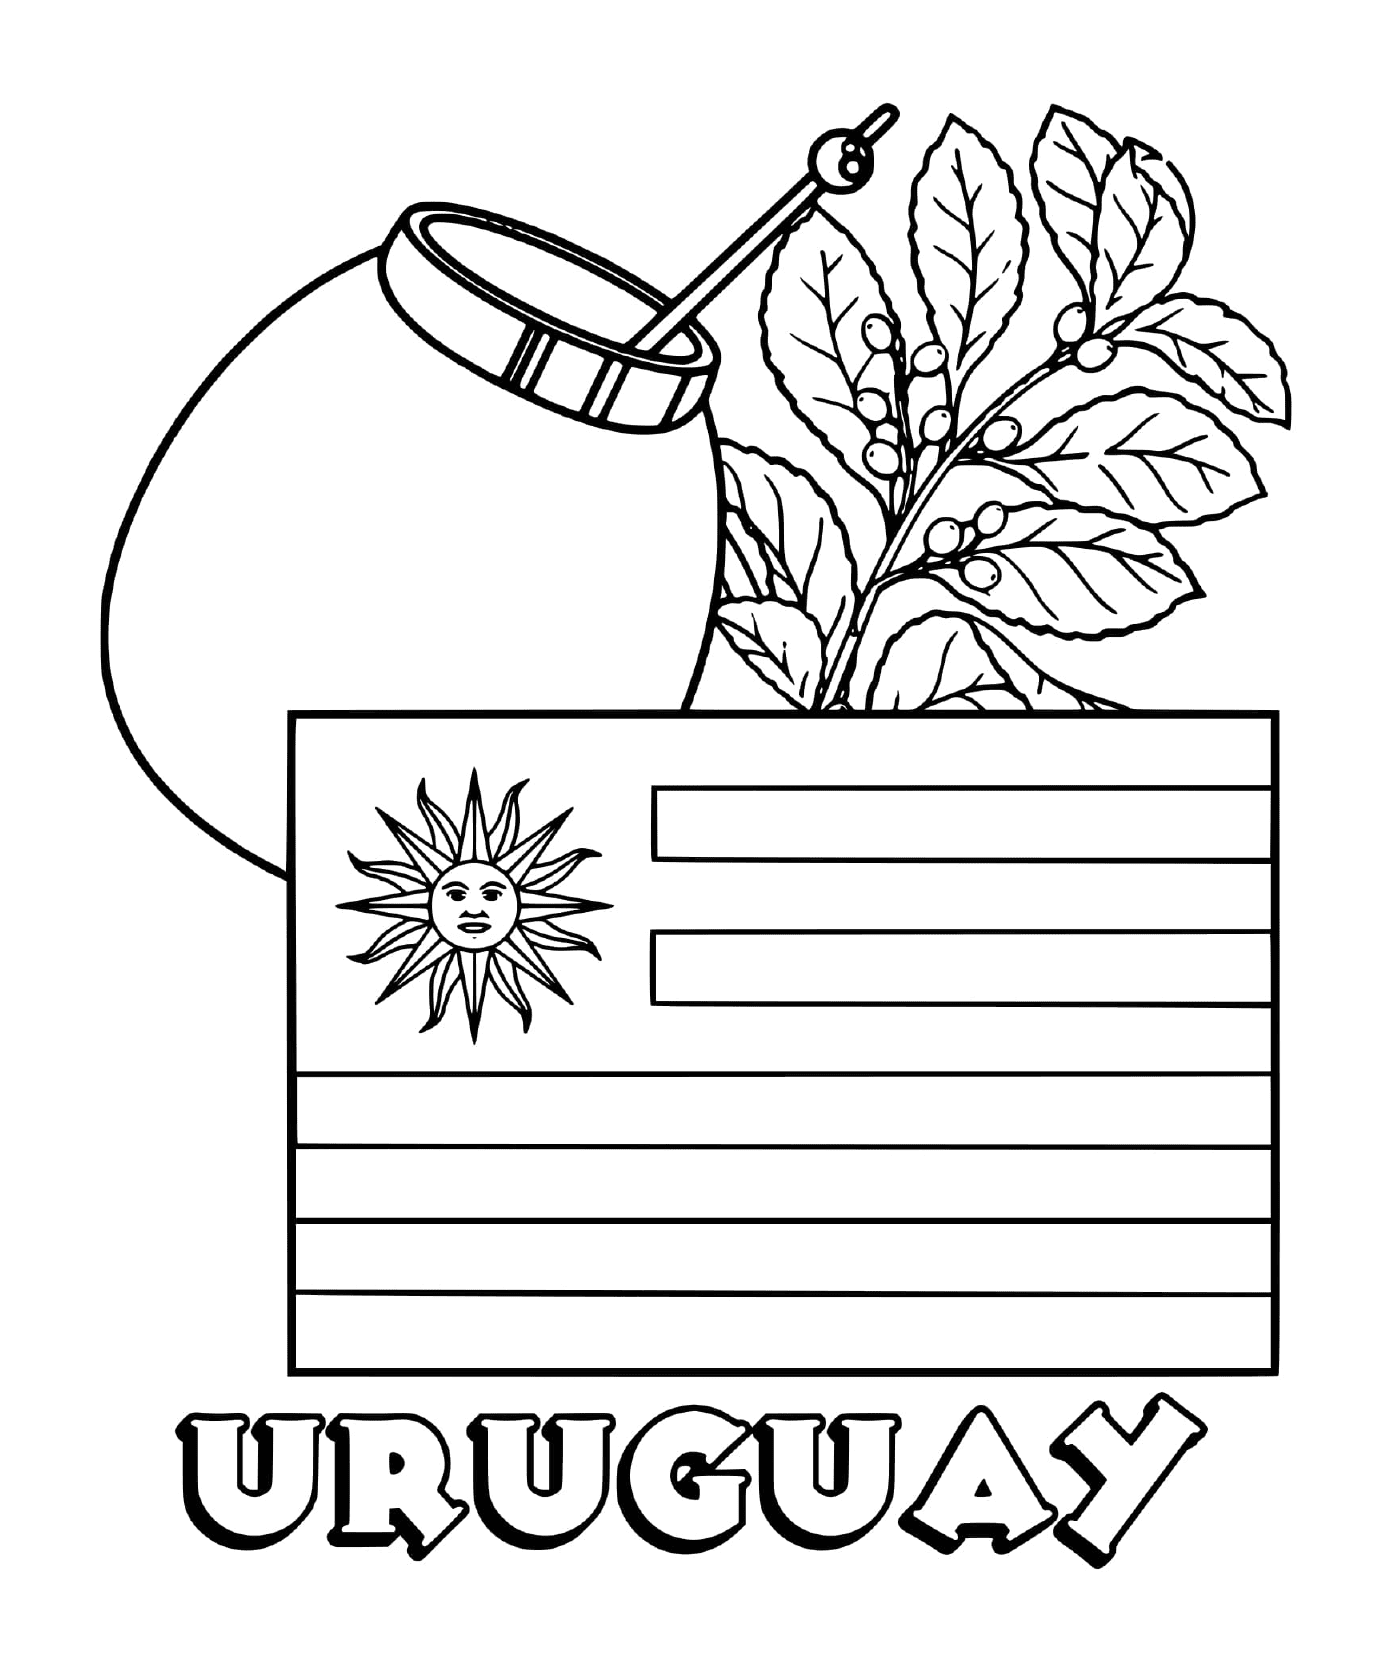  Uruguayan flag, yesba matte 